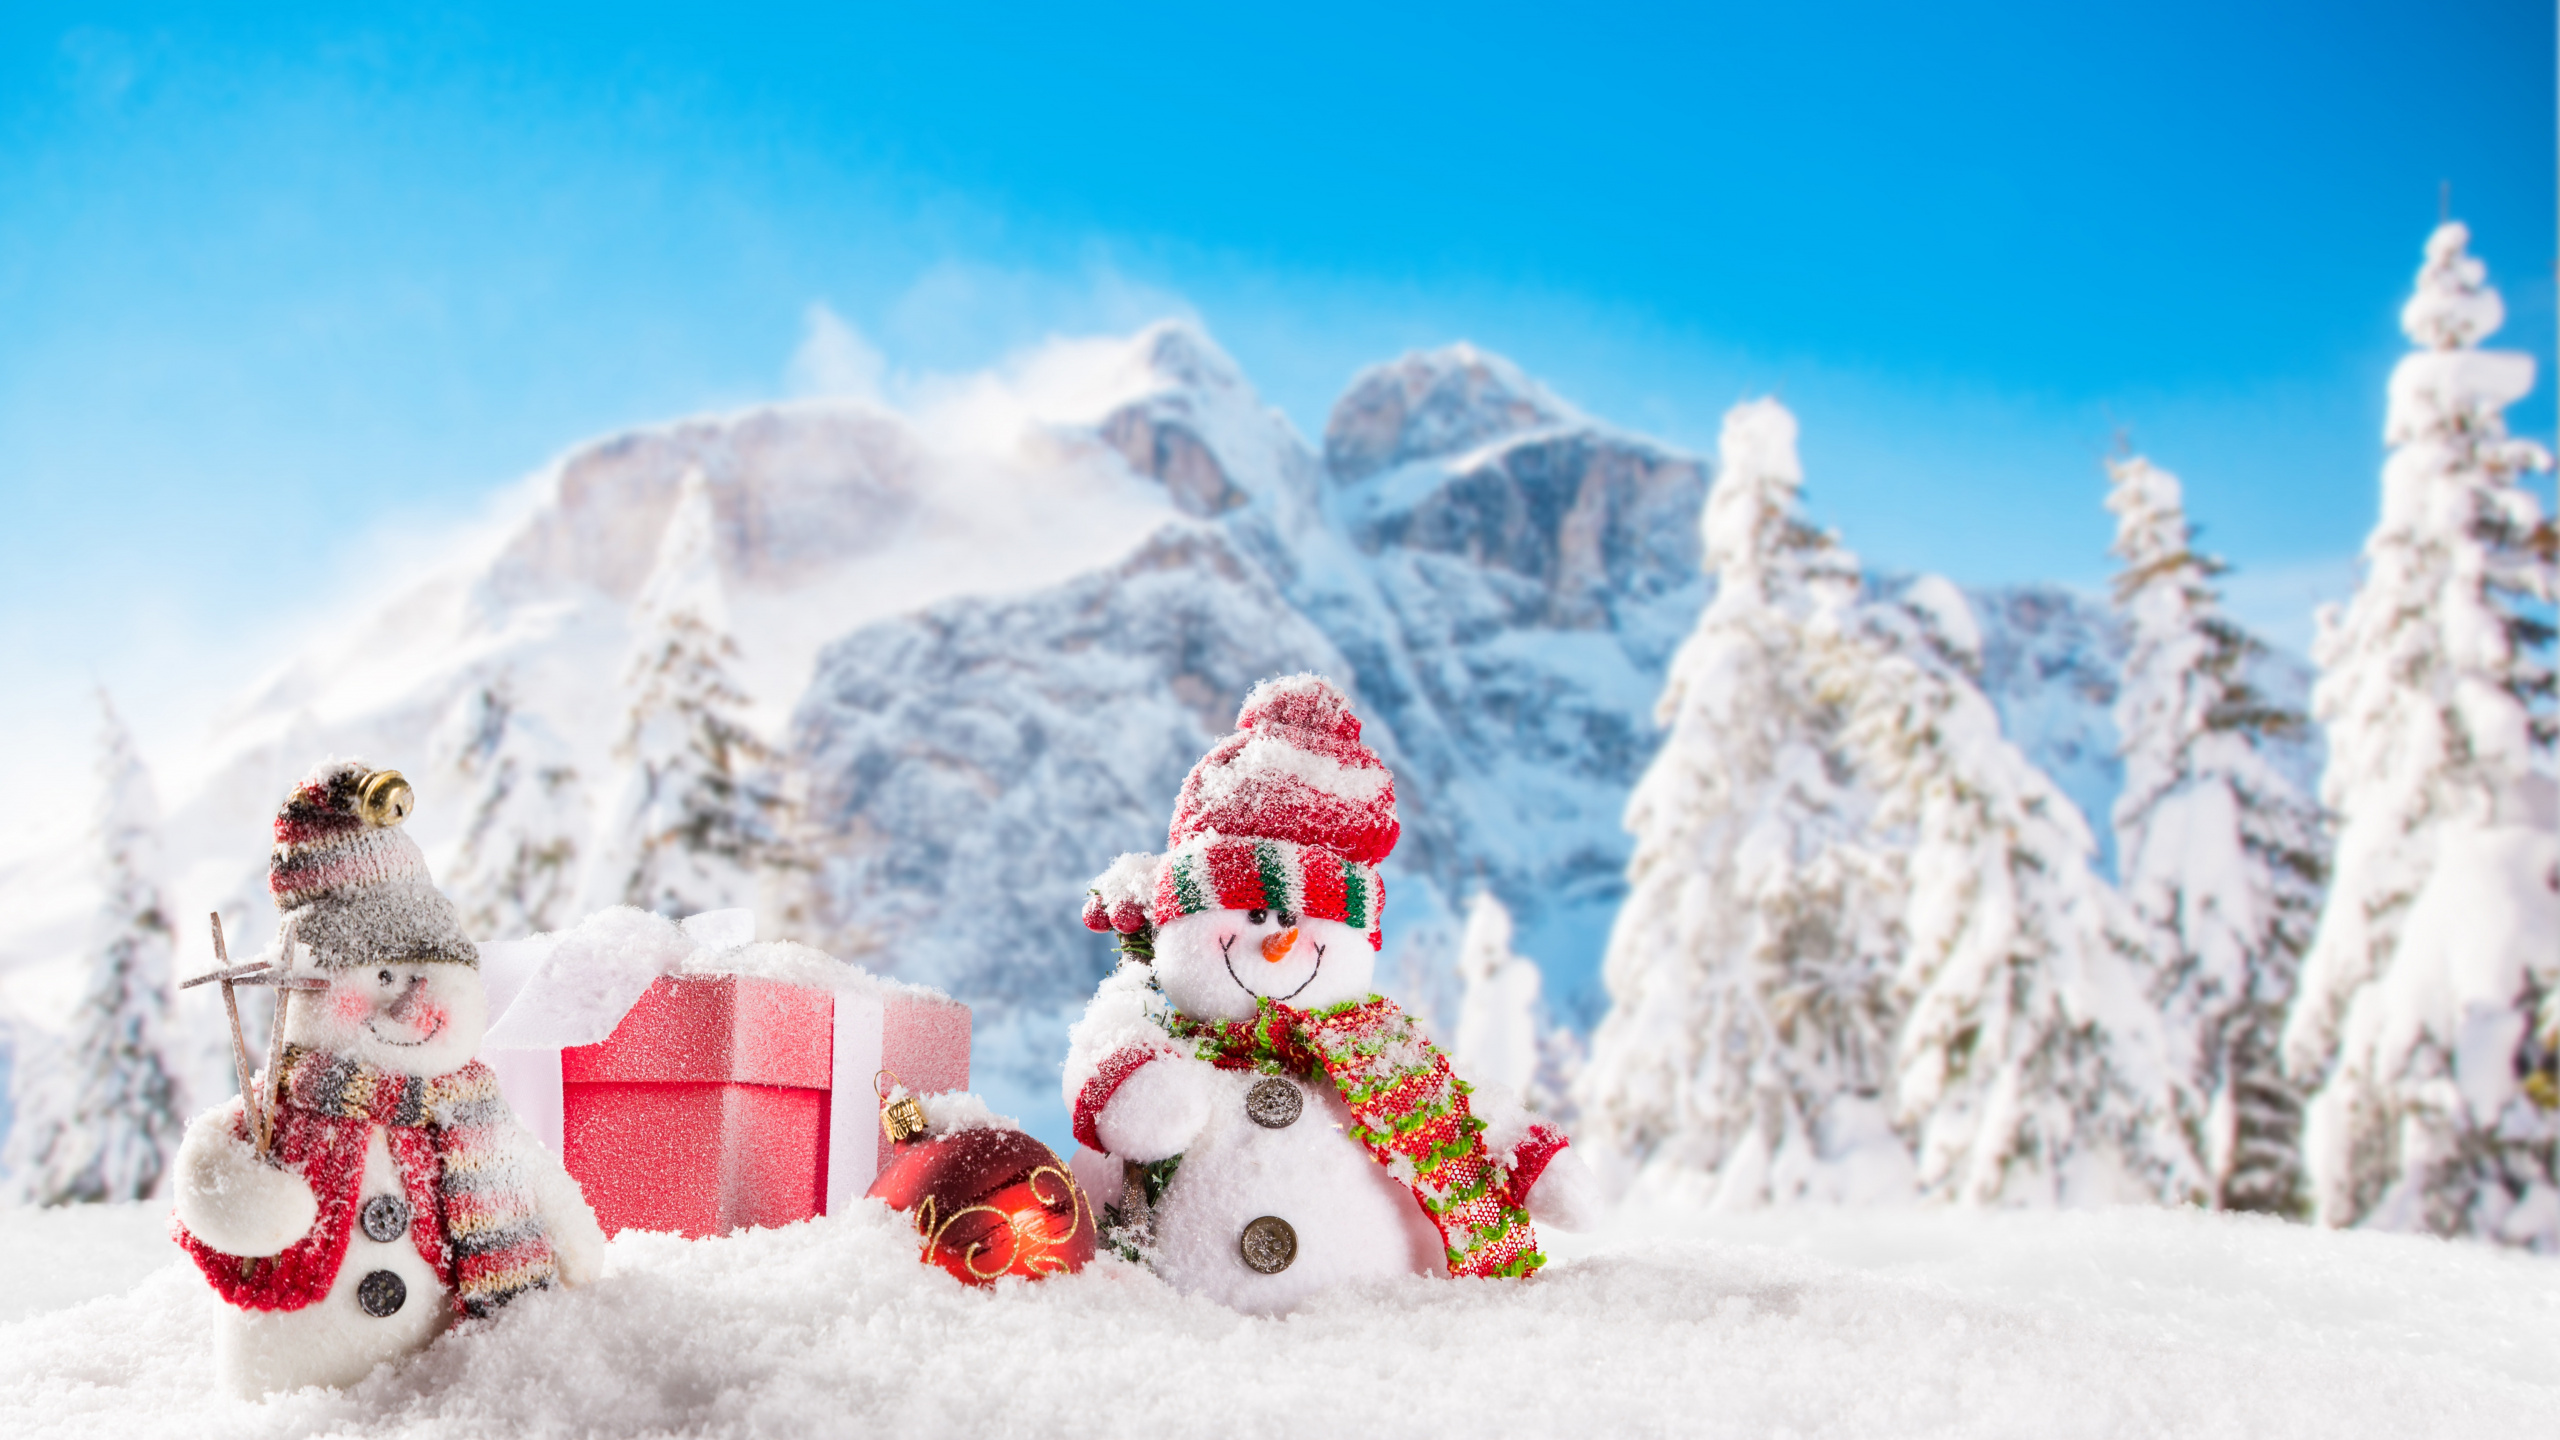 圣诞节那天, 雪人, 冬天, 冻结, 圣诞节 壁纸 2560x1440 允许